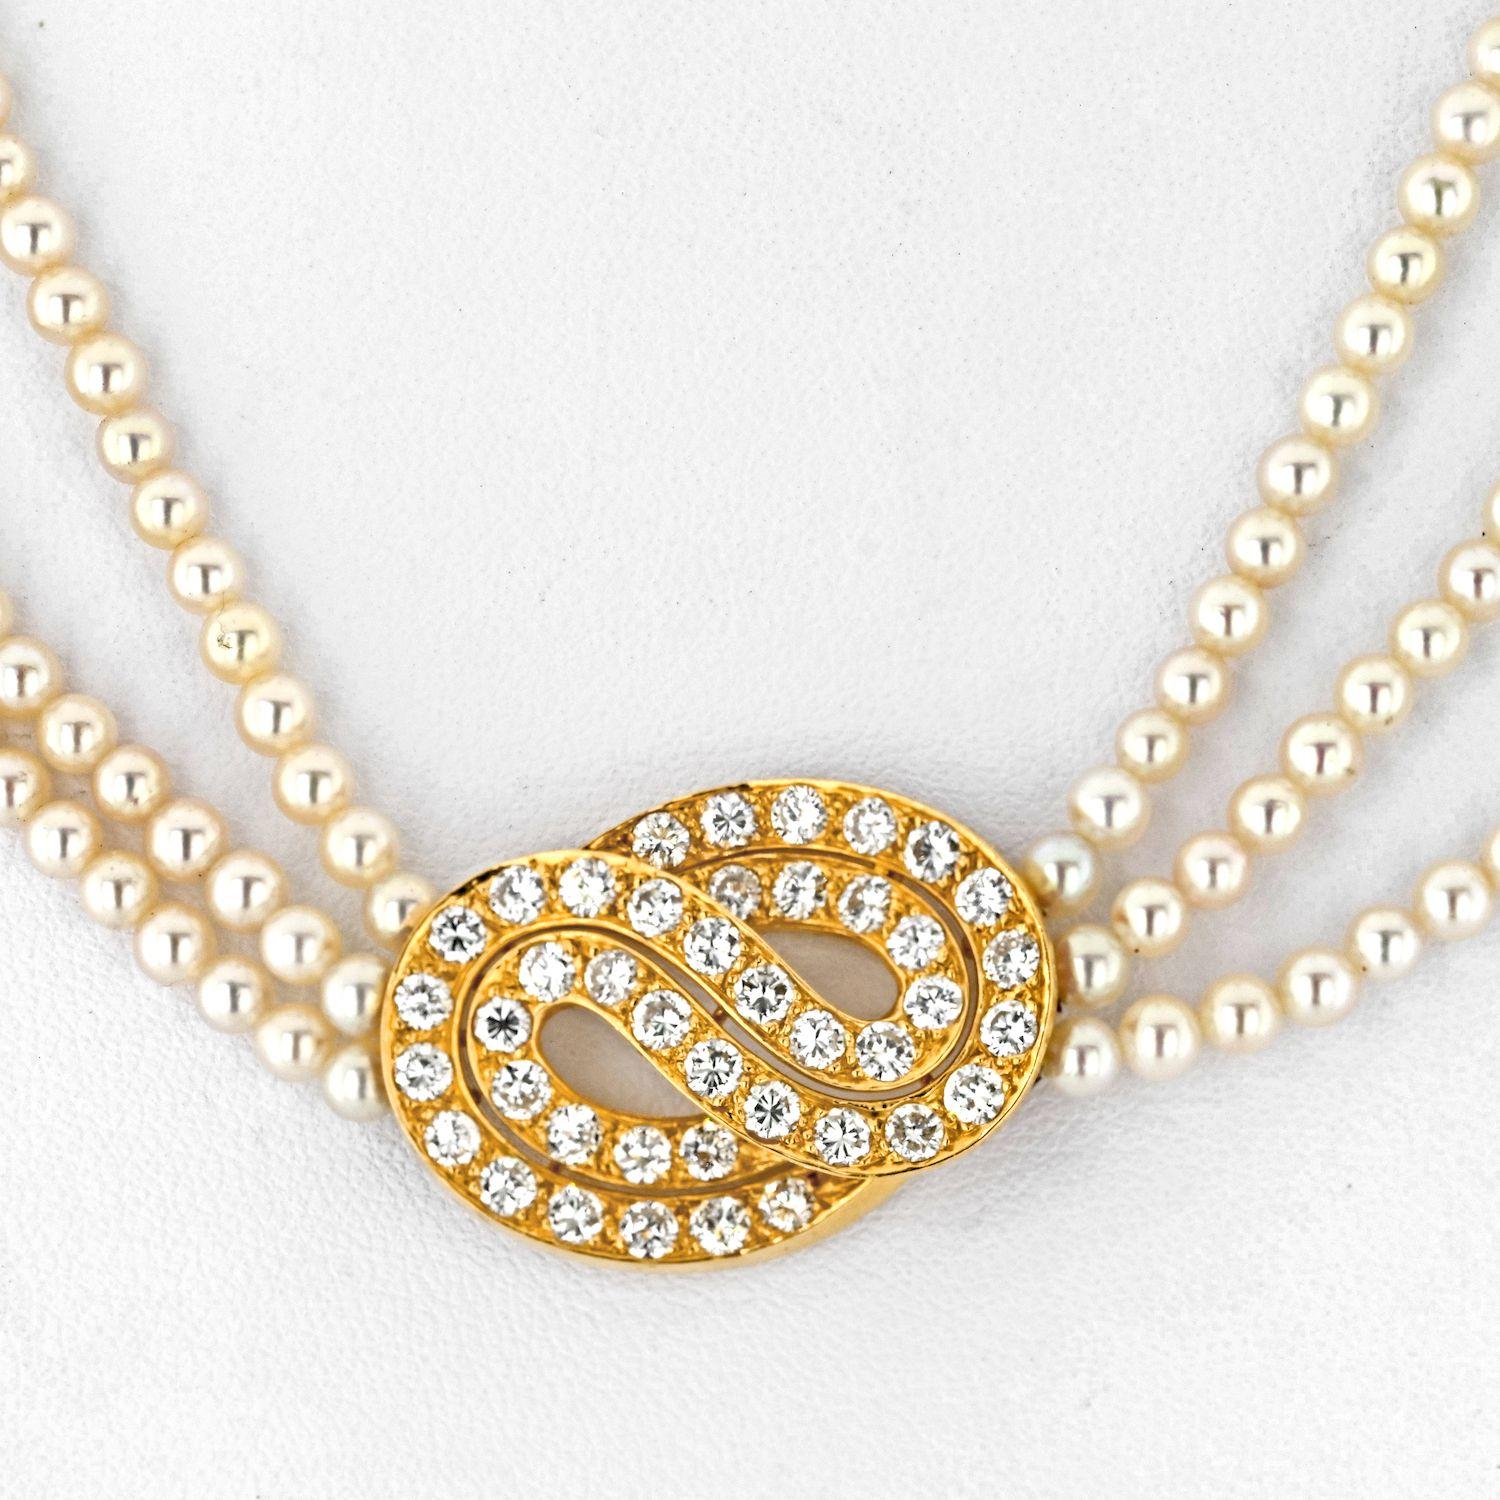 Die Van Cleef & Arpels 18K Gelbgold Multistrand Perlen-Diamanten-Halskette ist ein exquisites Schmuckstück, das Raffinesse und Eleganz ausstrahlt. Diese zarte Halskette besteht aus mehreren Strängen glänzender Perlen, die sorgfältig zu einem